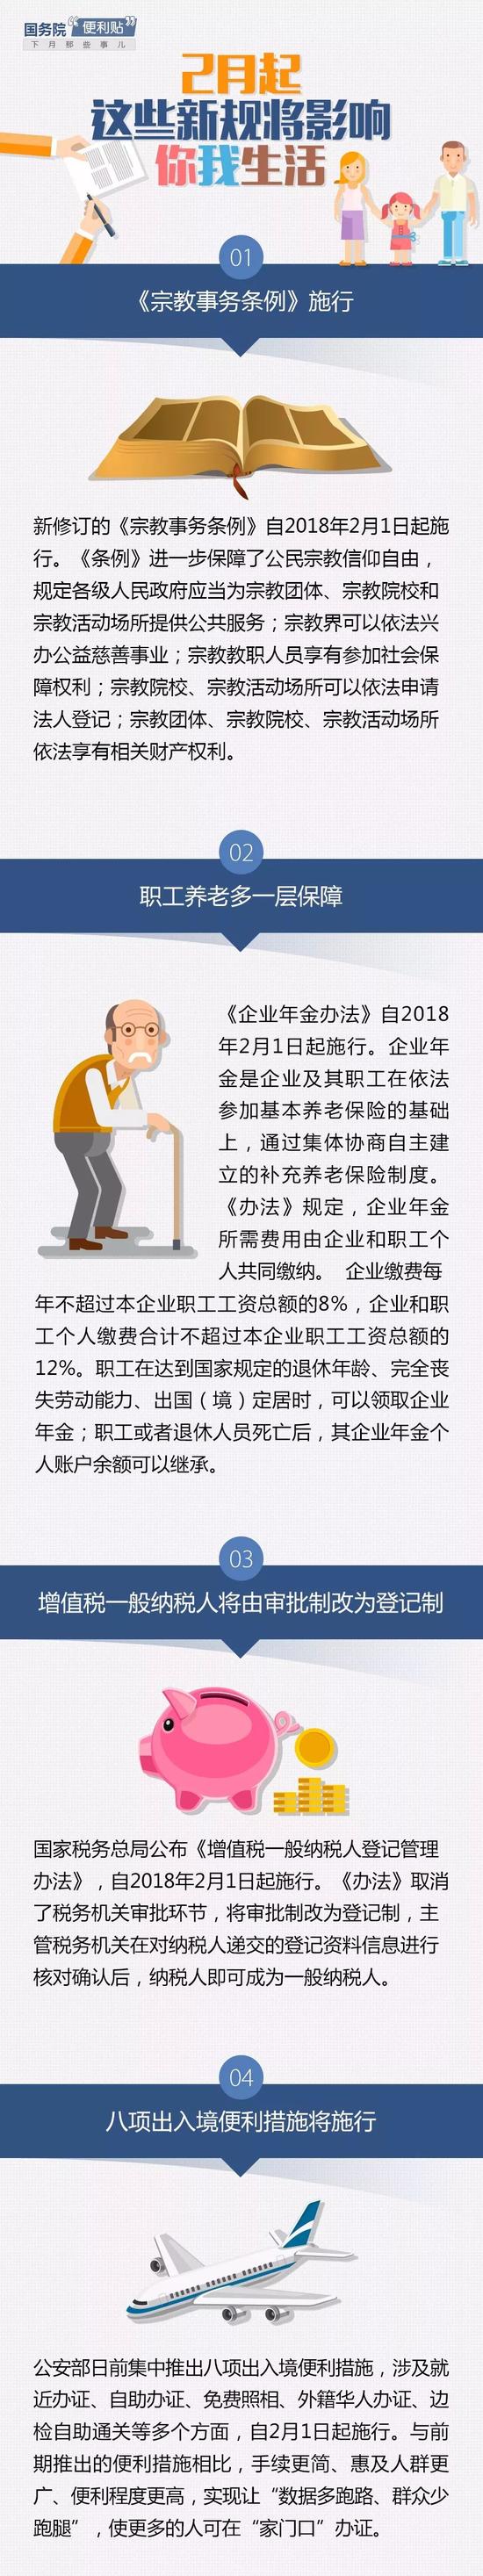 中国政府网:下月起这些新规将影响你我生活 不知道的赶快看